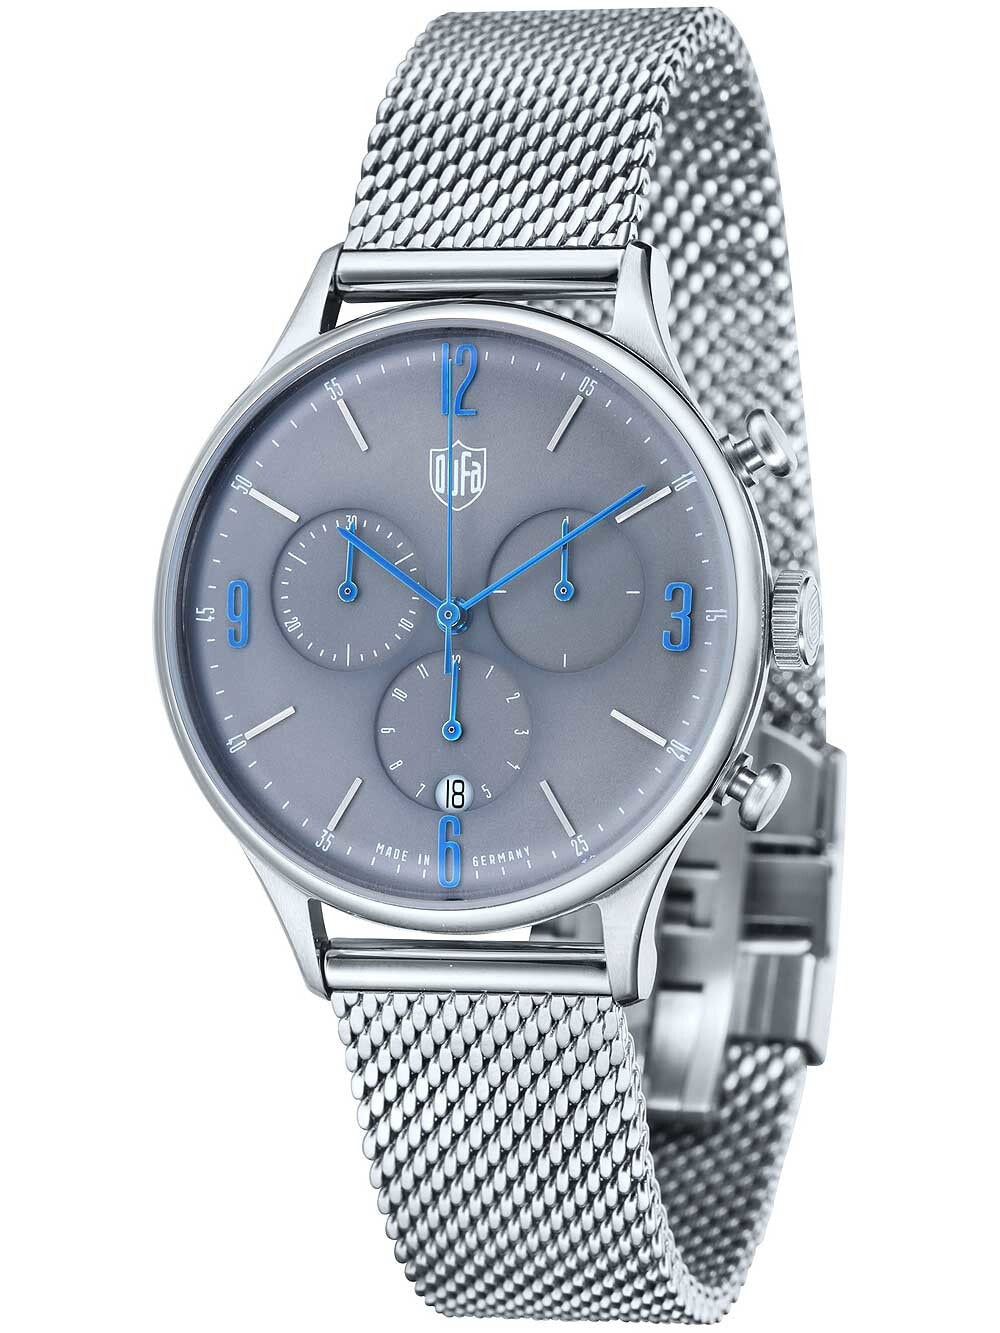 Мужские наручные часы с серебряным браслетом DuFa DF-9002-11 Van der Rohe Mens Chronograph 38mm 3 ATM